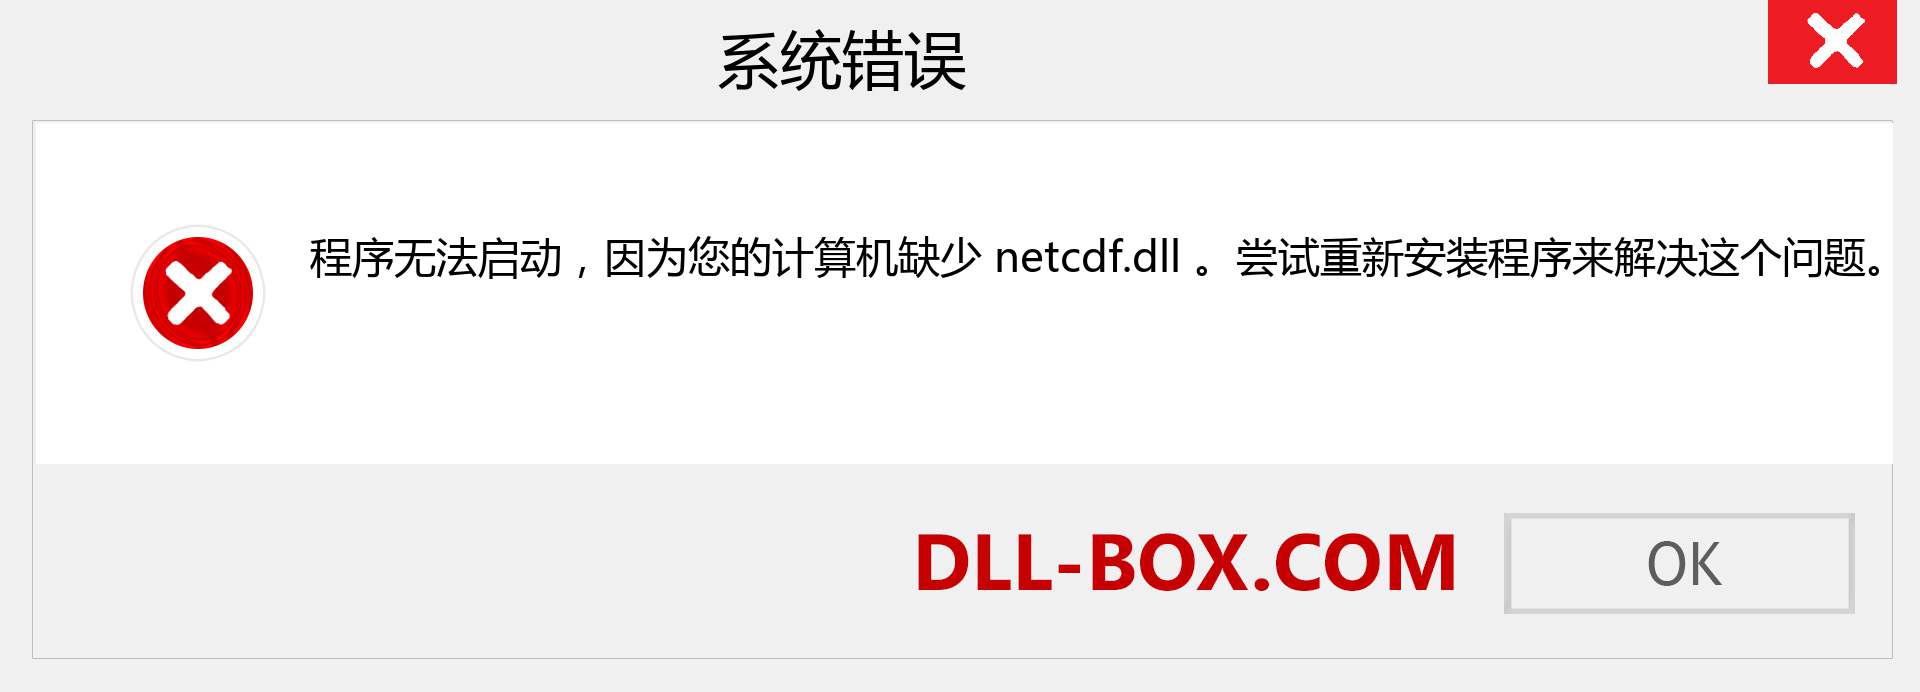 netcdf.dll 文件丢失？。 适用于 Windows 7、8、10 的下载 - 修复 Windows、照片、图像上的 netcdf dll 丢失错误